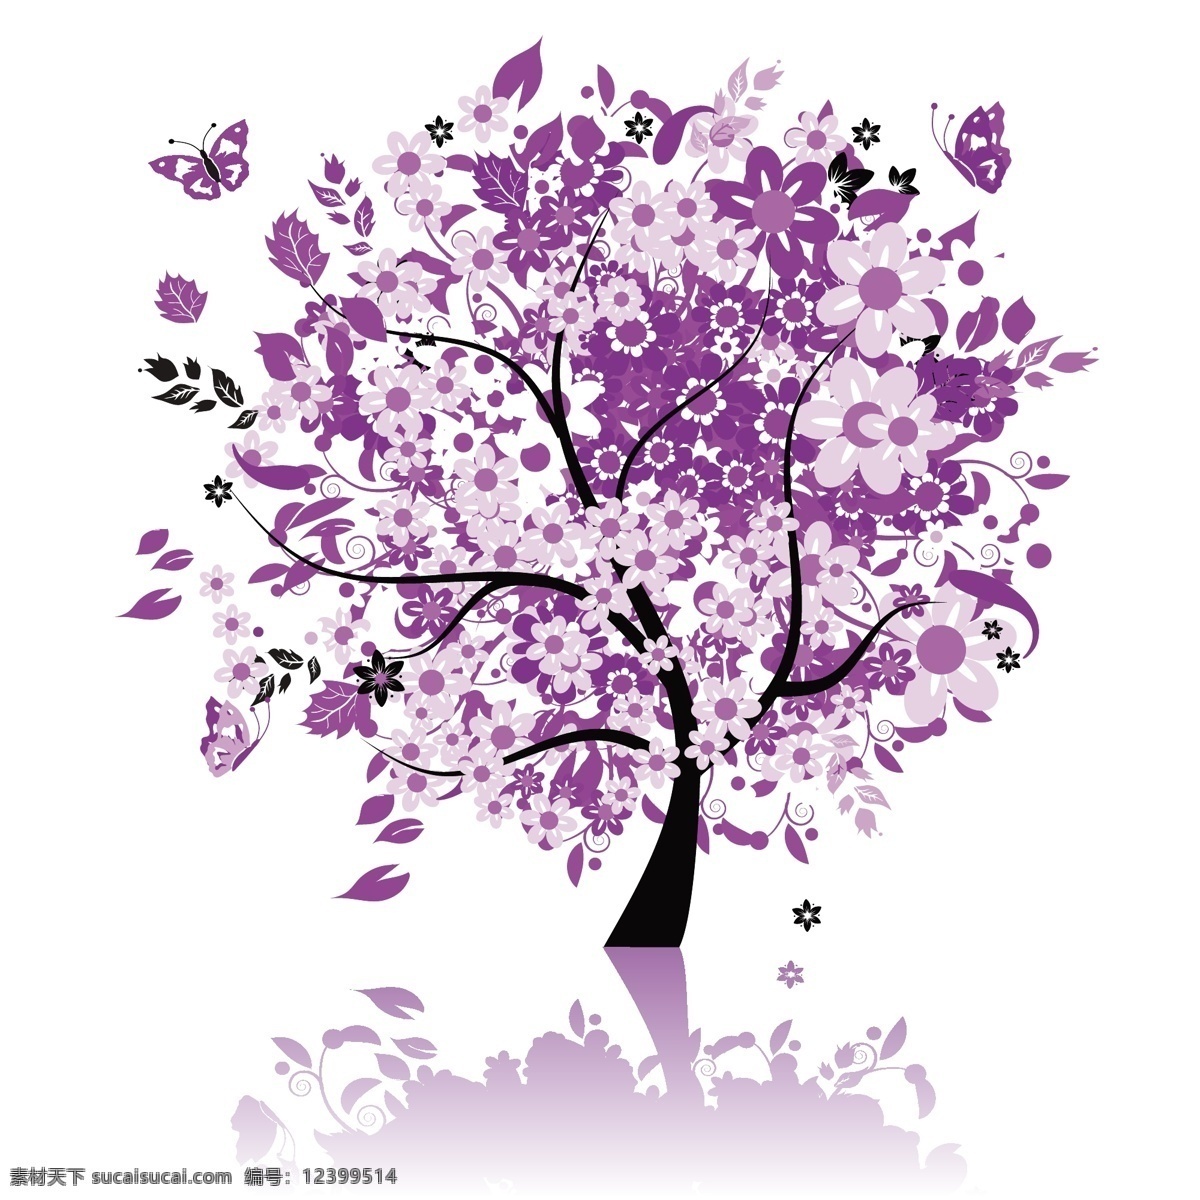 紫色树木素材 抽象树 时尚花纹 时尚潮流 树 潮流花纹 插画树木 卡通树木 花草树木 生物世界 矢量素材 白色